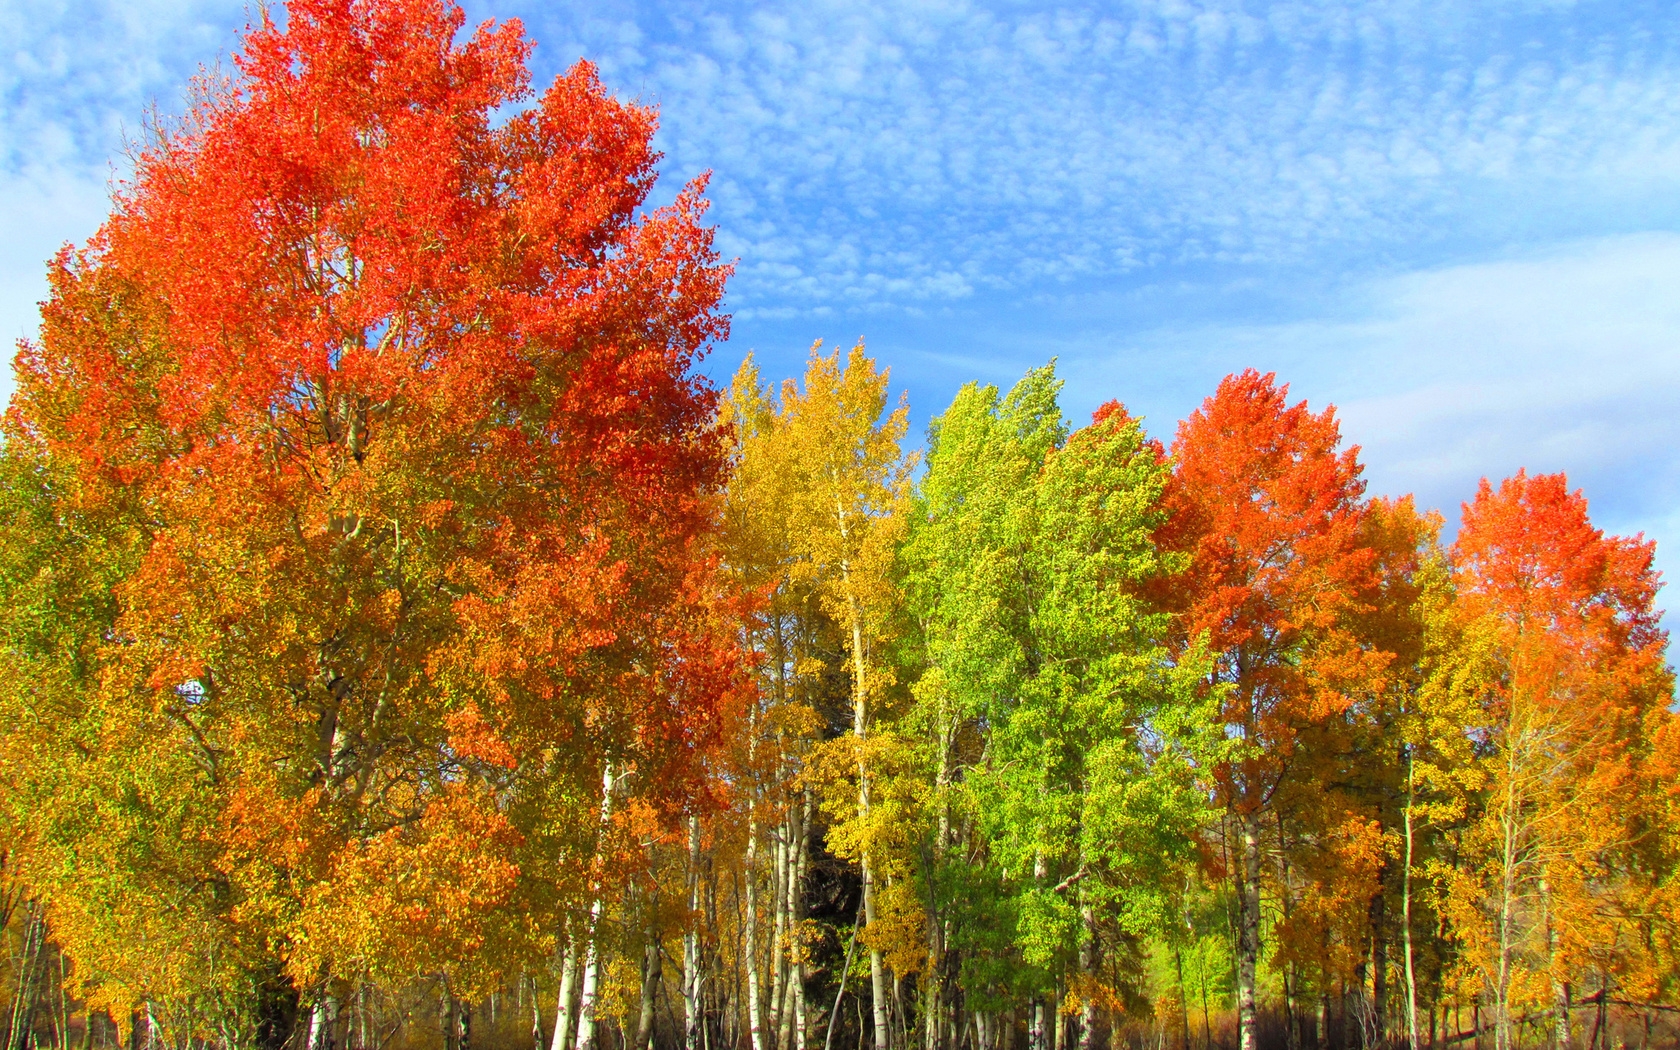 бесплатное фото: дерево, Осень, пейзаж, Золотая осень, дерево в осень, цвета осени, Солнце